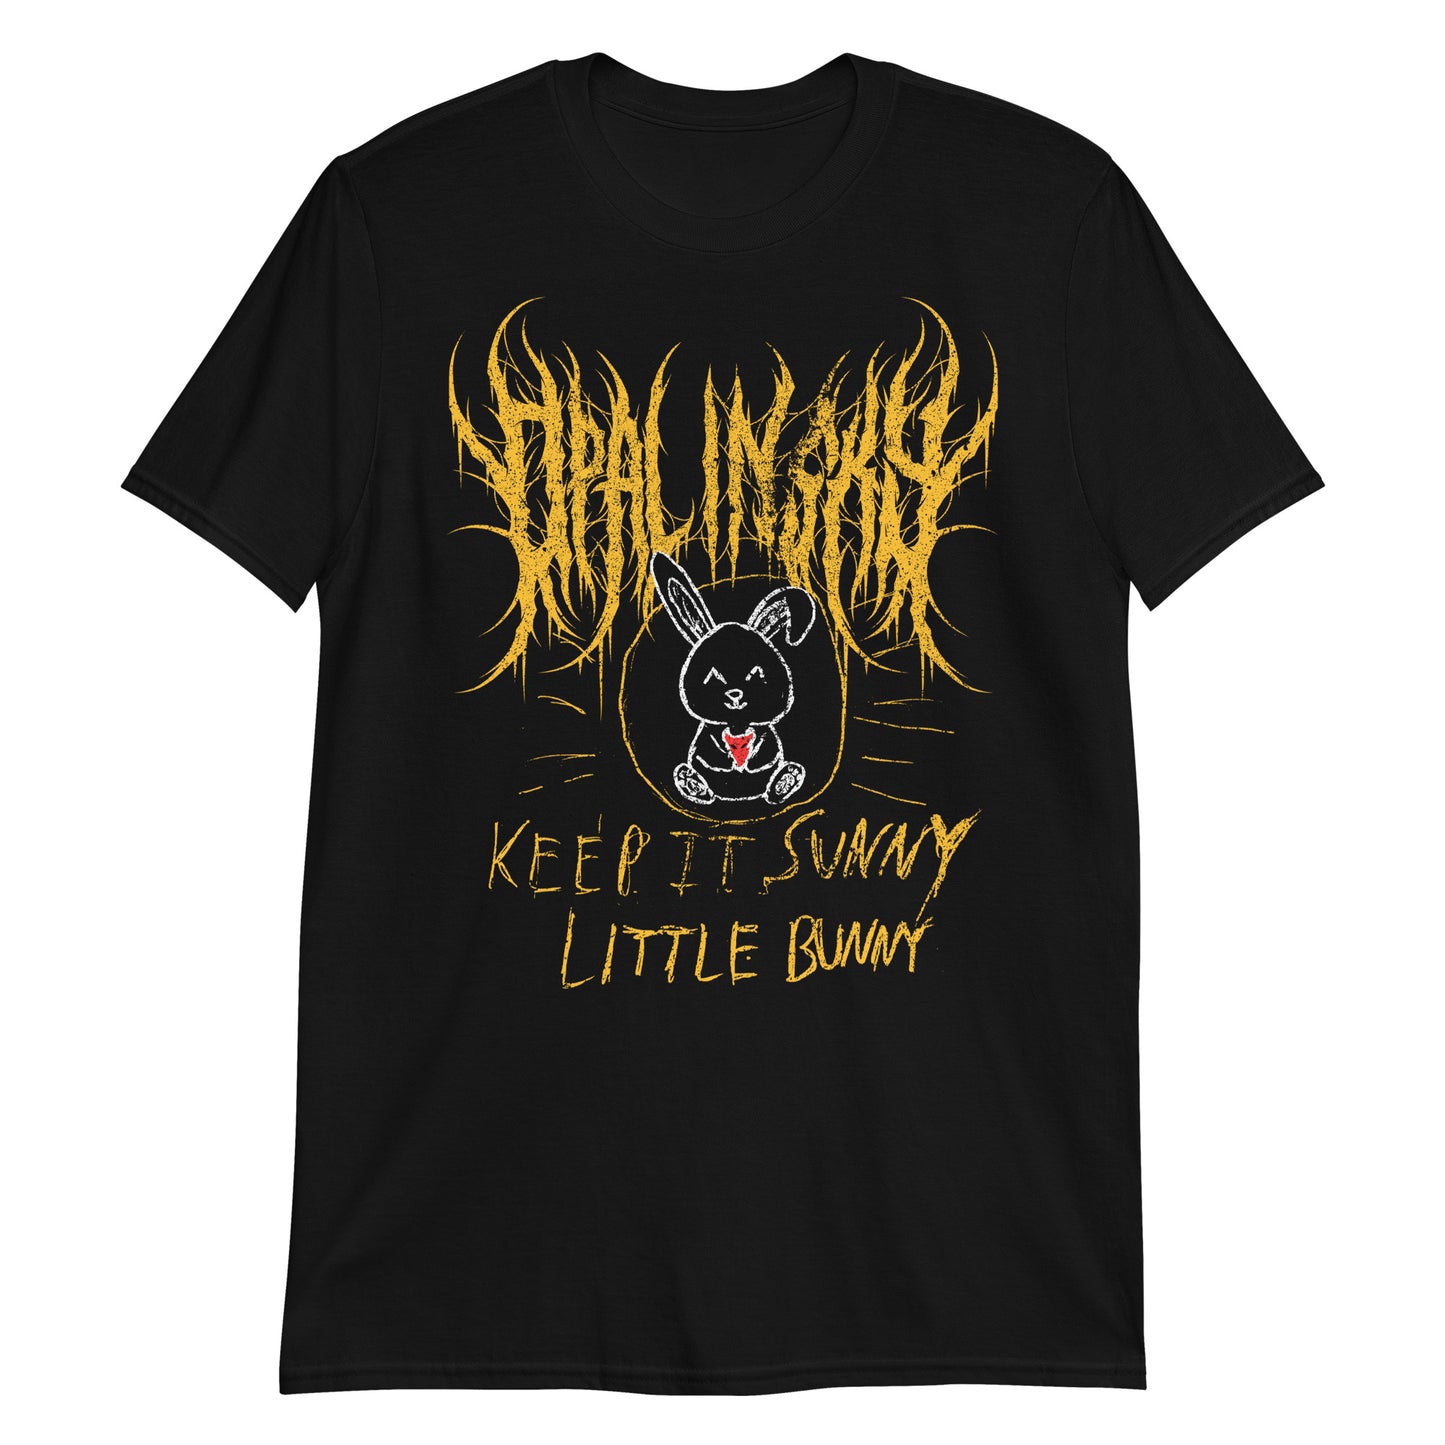 OPAL IN SKY "Keep It Sunny Little Bunny" Unisex T-Shirt